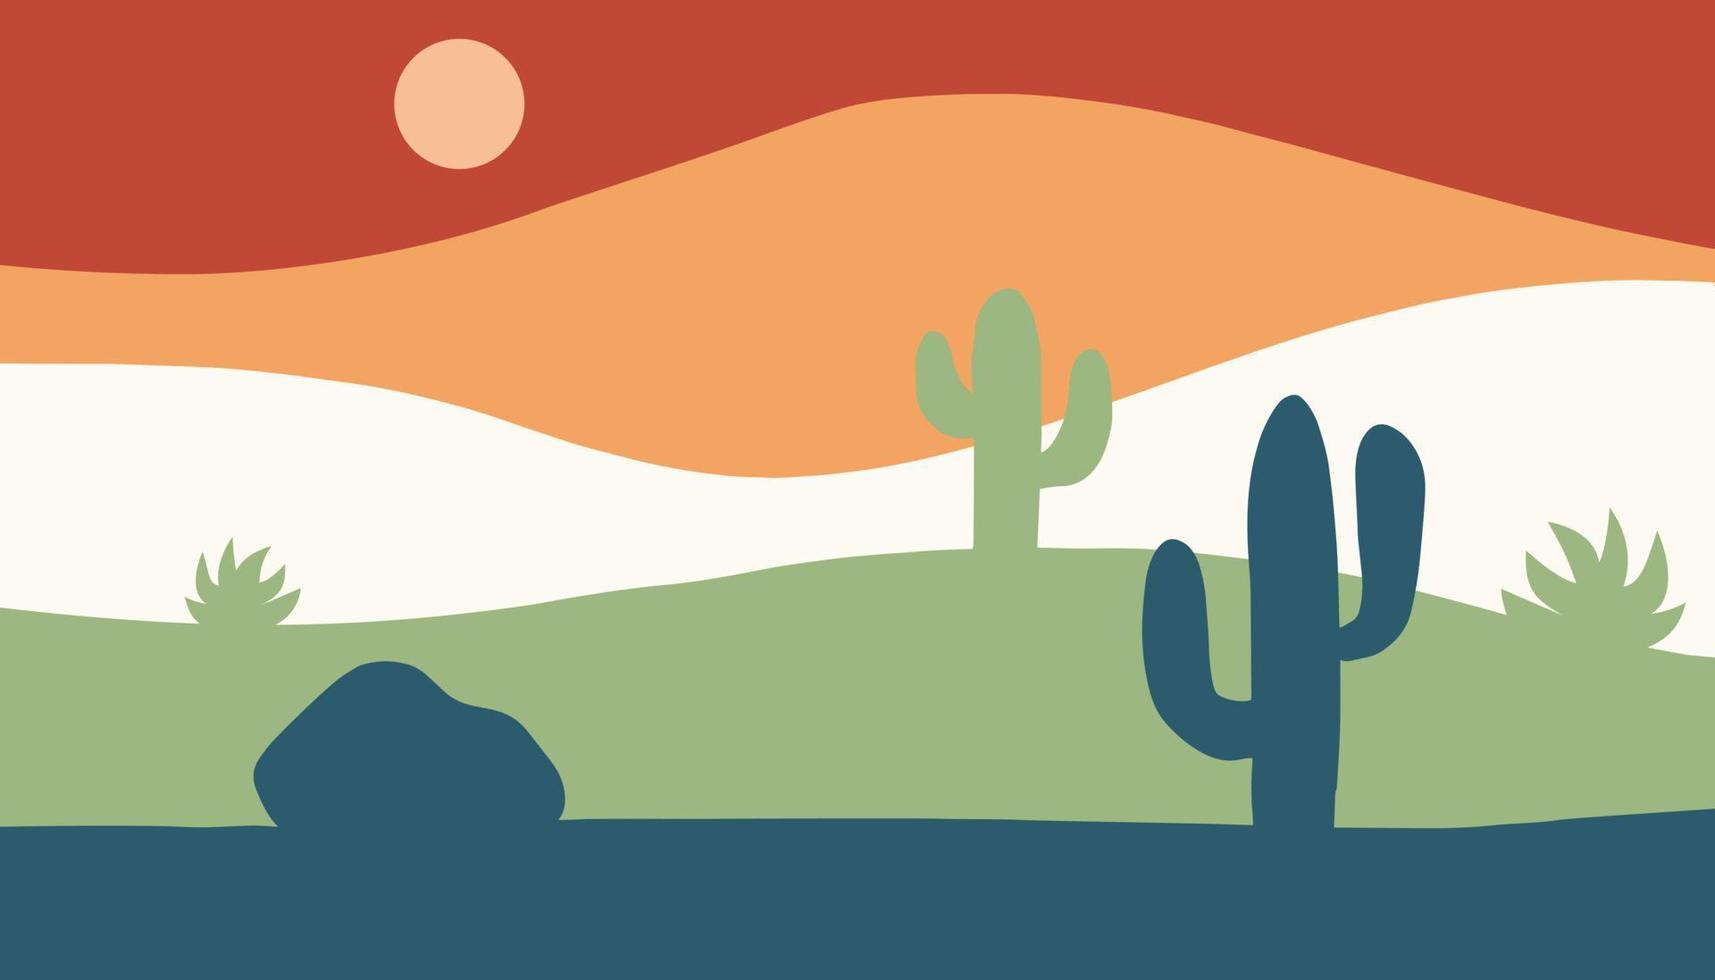 fond contemporain minimaliste de vecteur. paysage de montagne du désert du sud-ouest avec des cactus dans un style plat. fond d'écran ou bannière pour le web et les médias sociaux vecteur